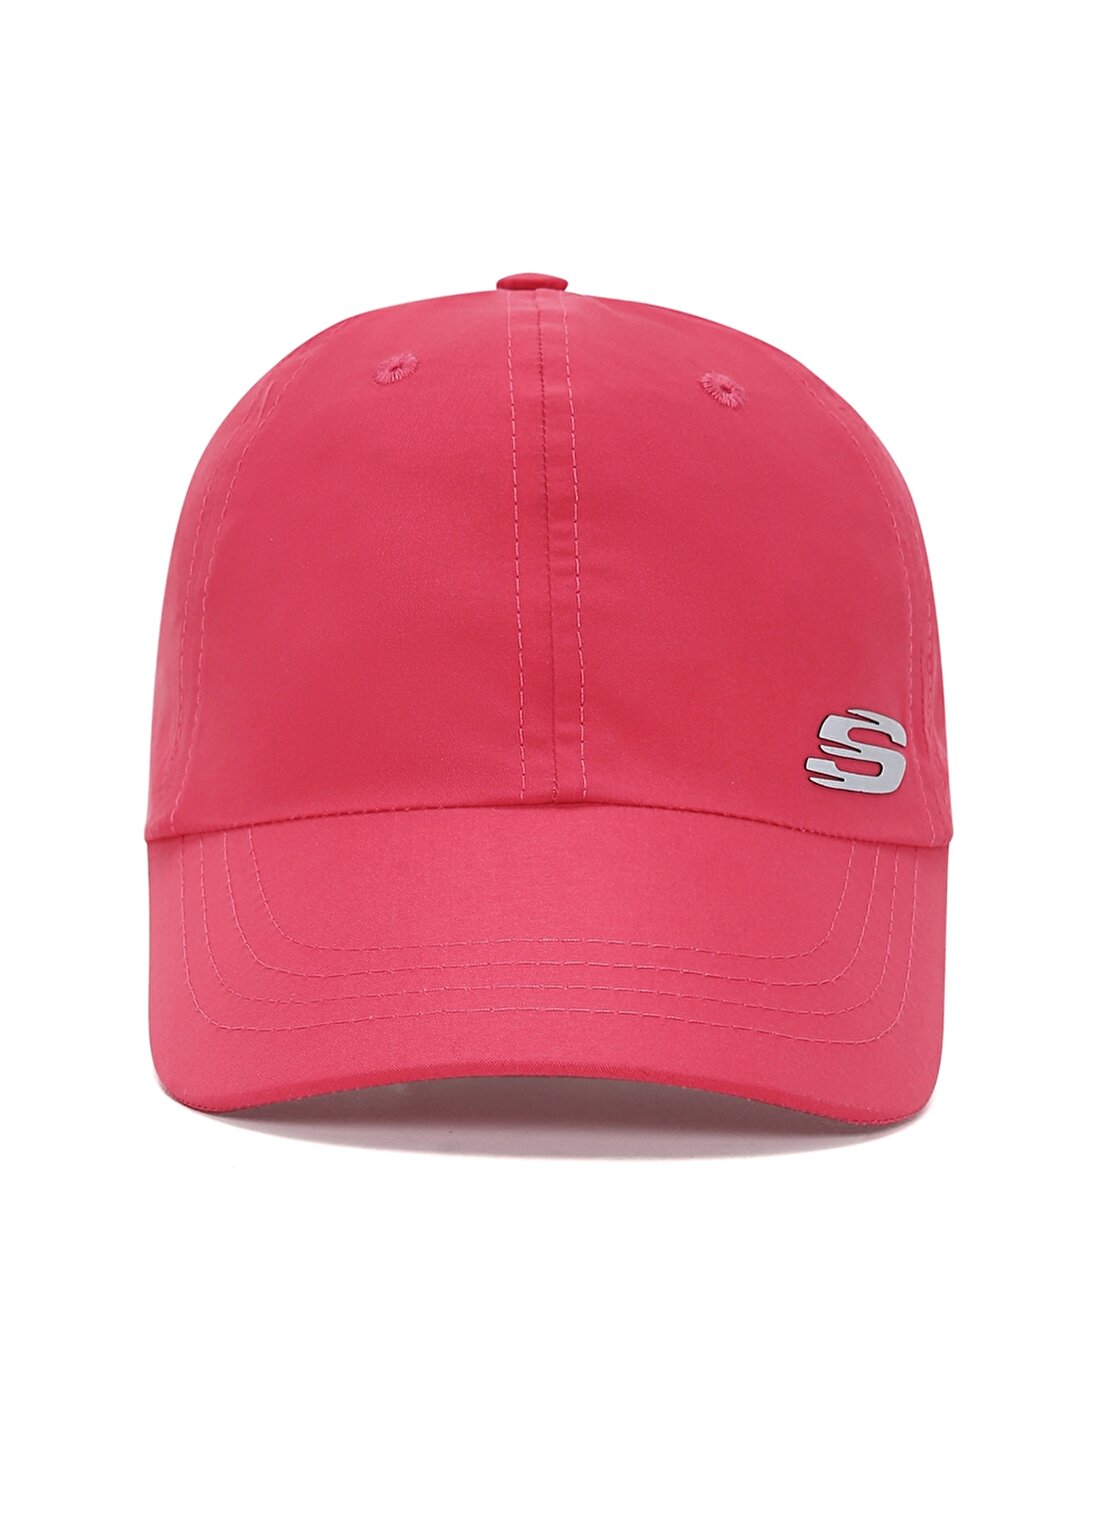 Skechers Mercan Kadın Şapka S231480-512 W SUMM